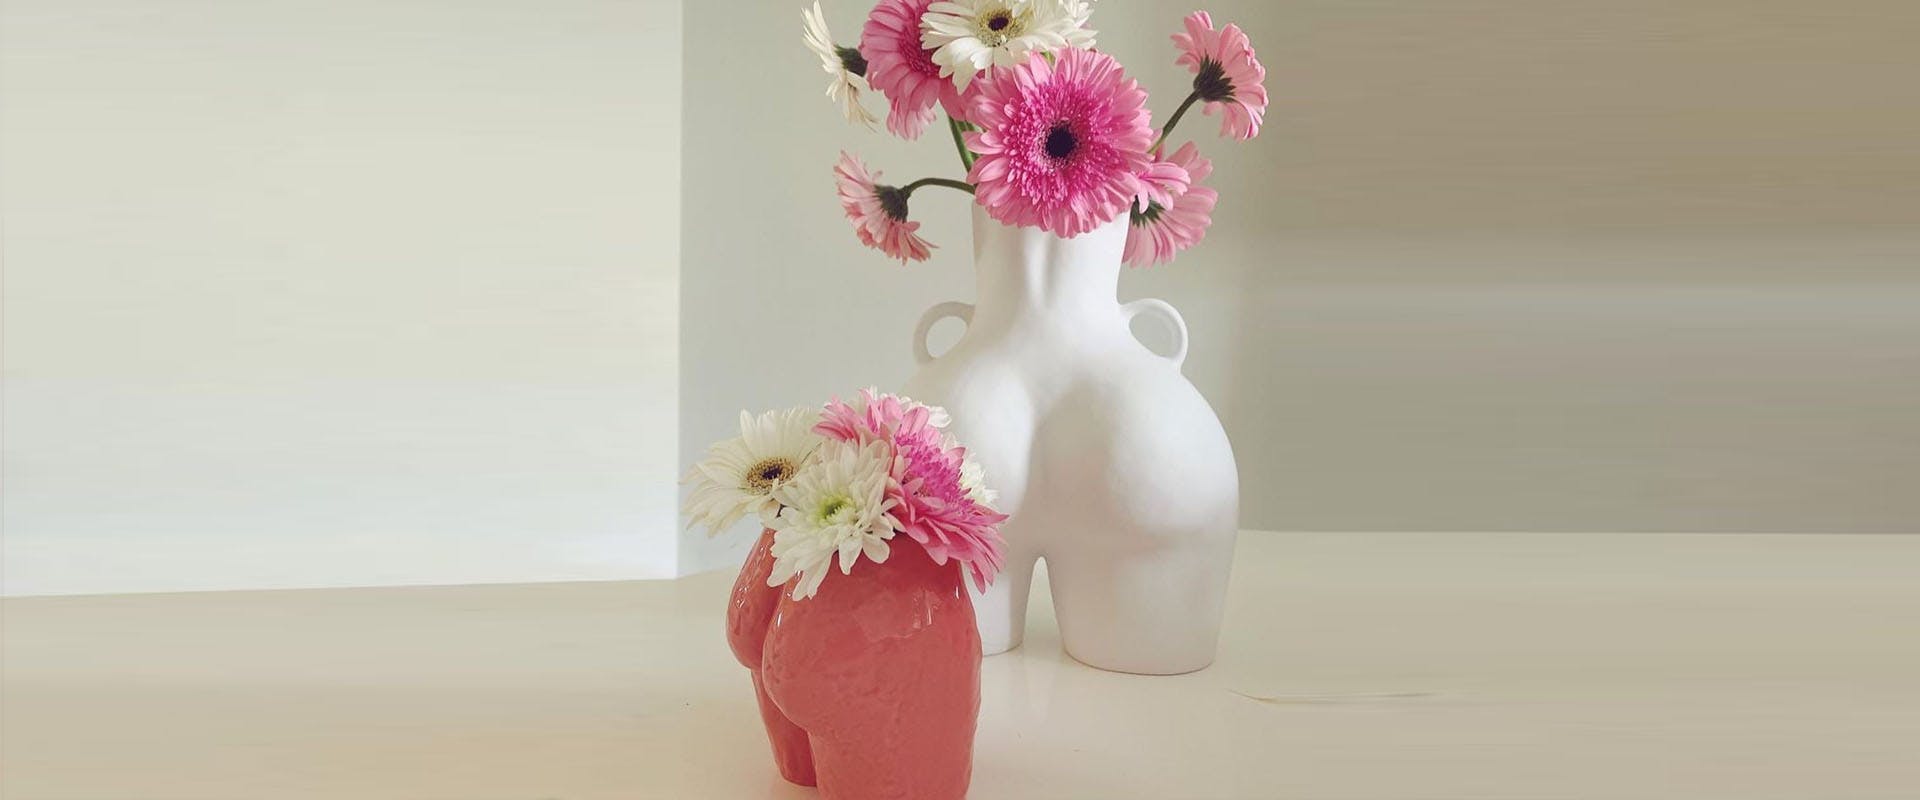 plant flower blossom vase jar pottery floral design art graphics pattern